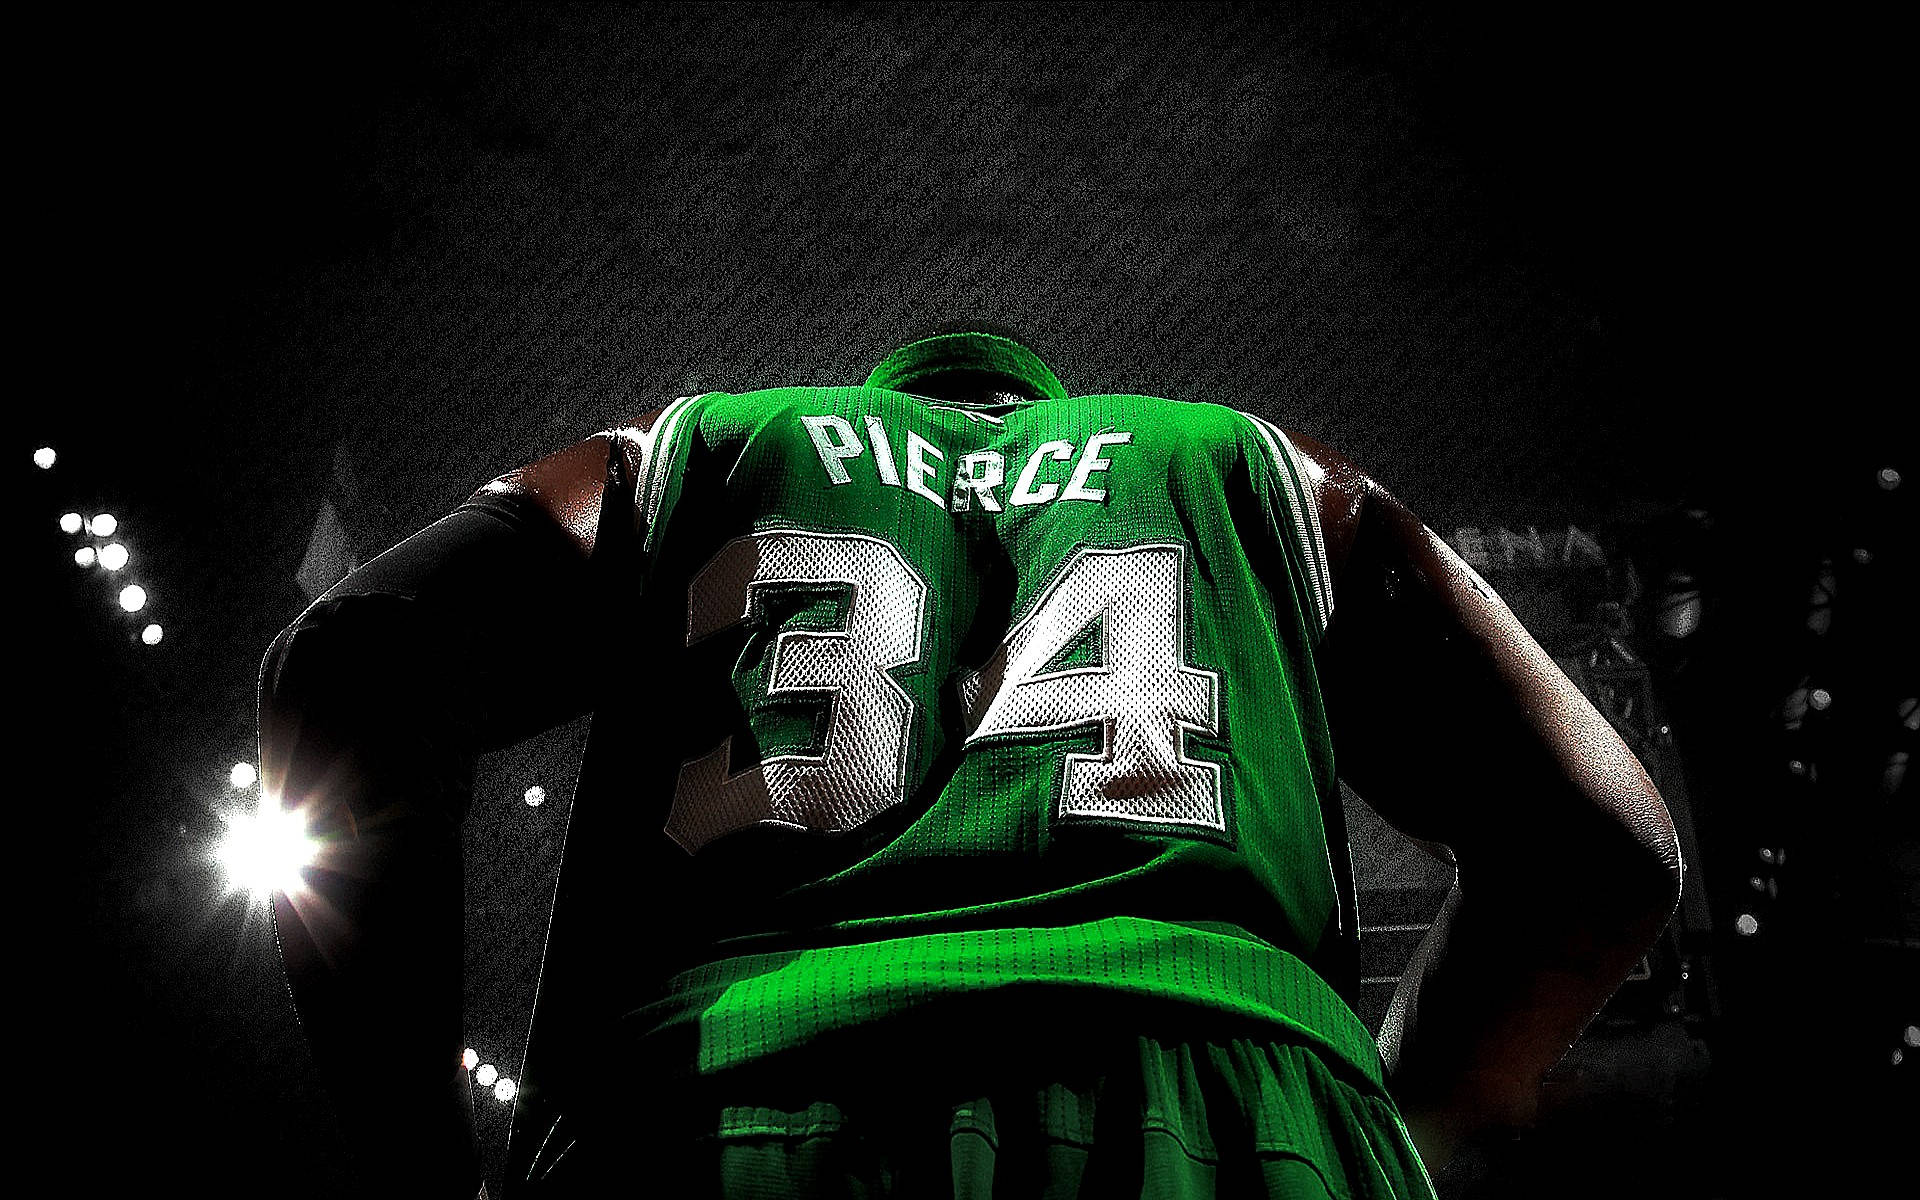 Paul Pierce Shot From Behind Under Spotlight